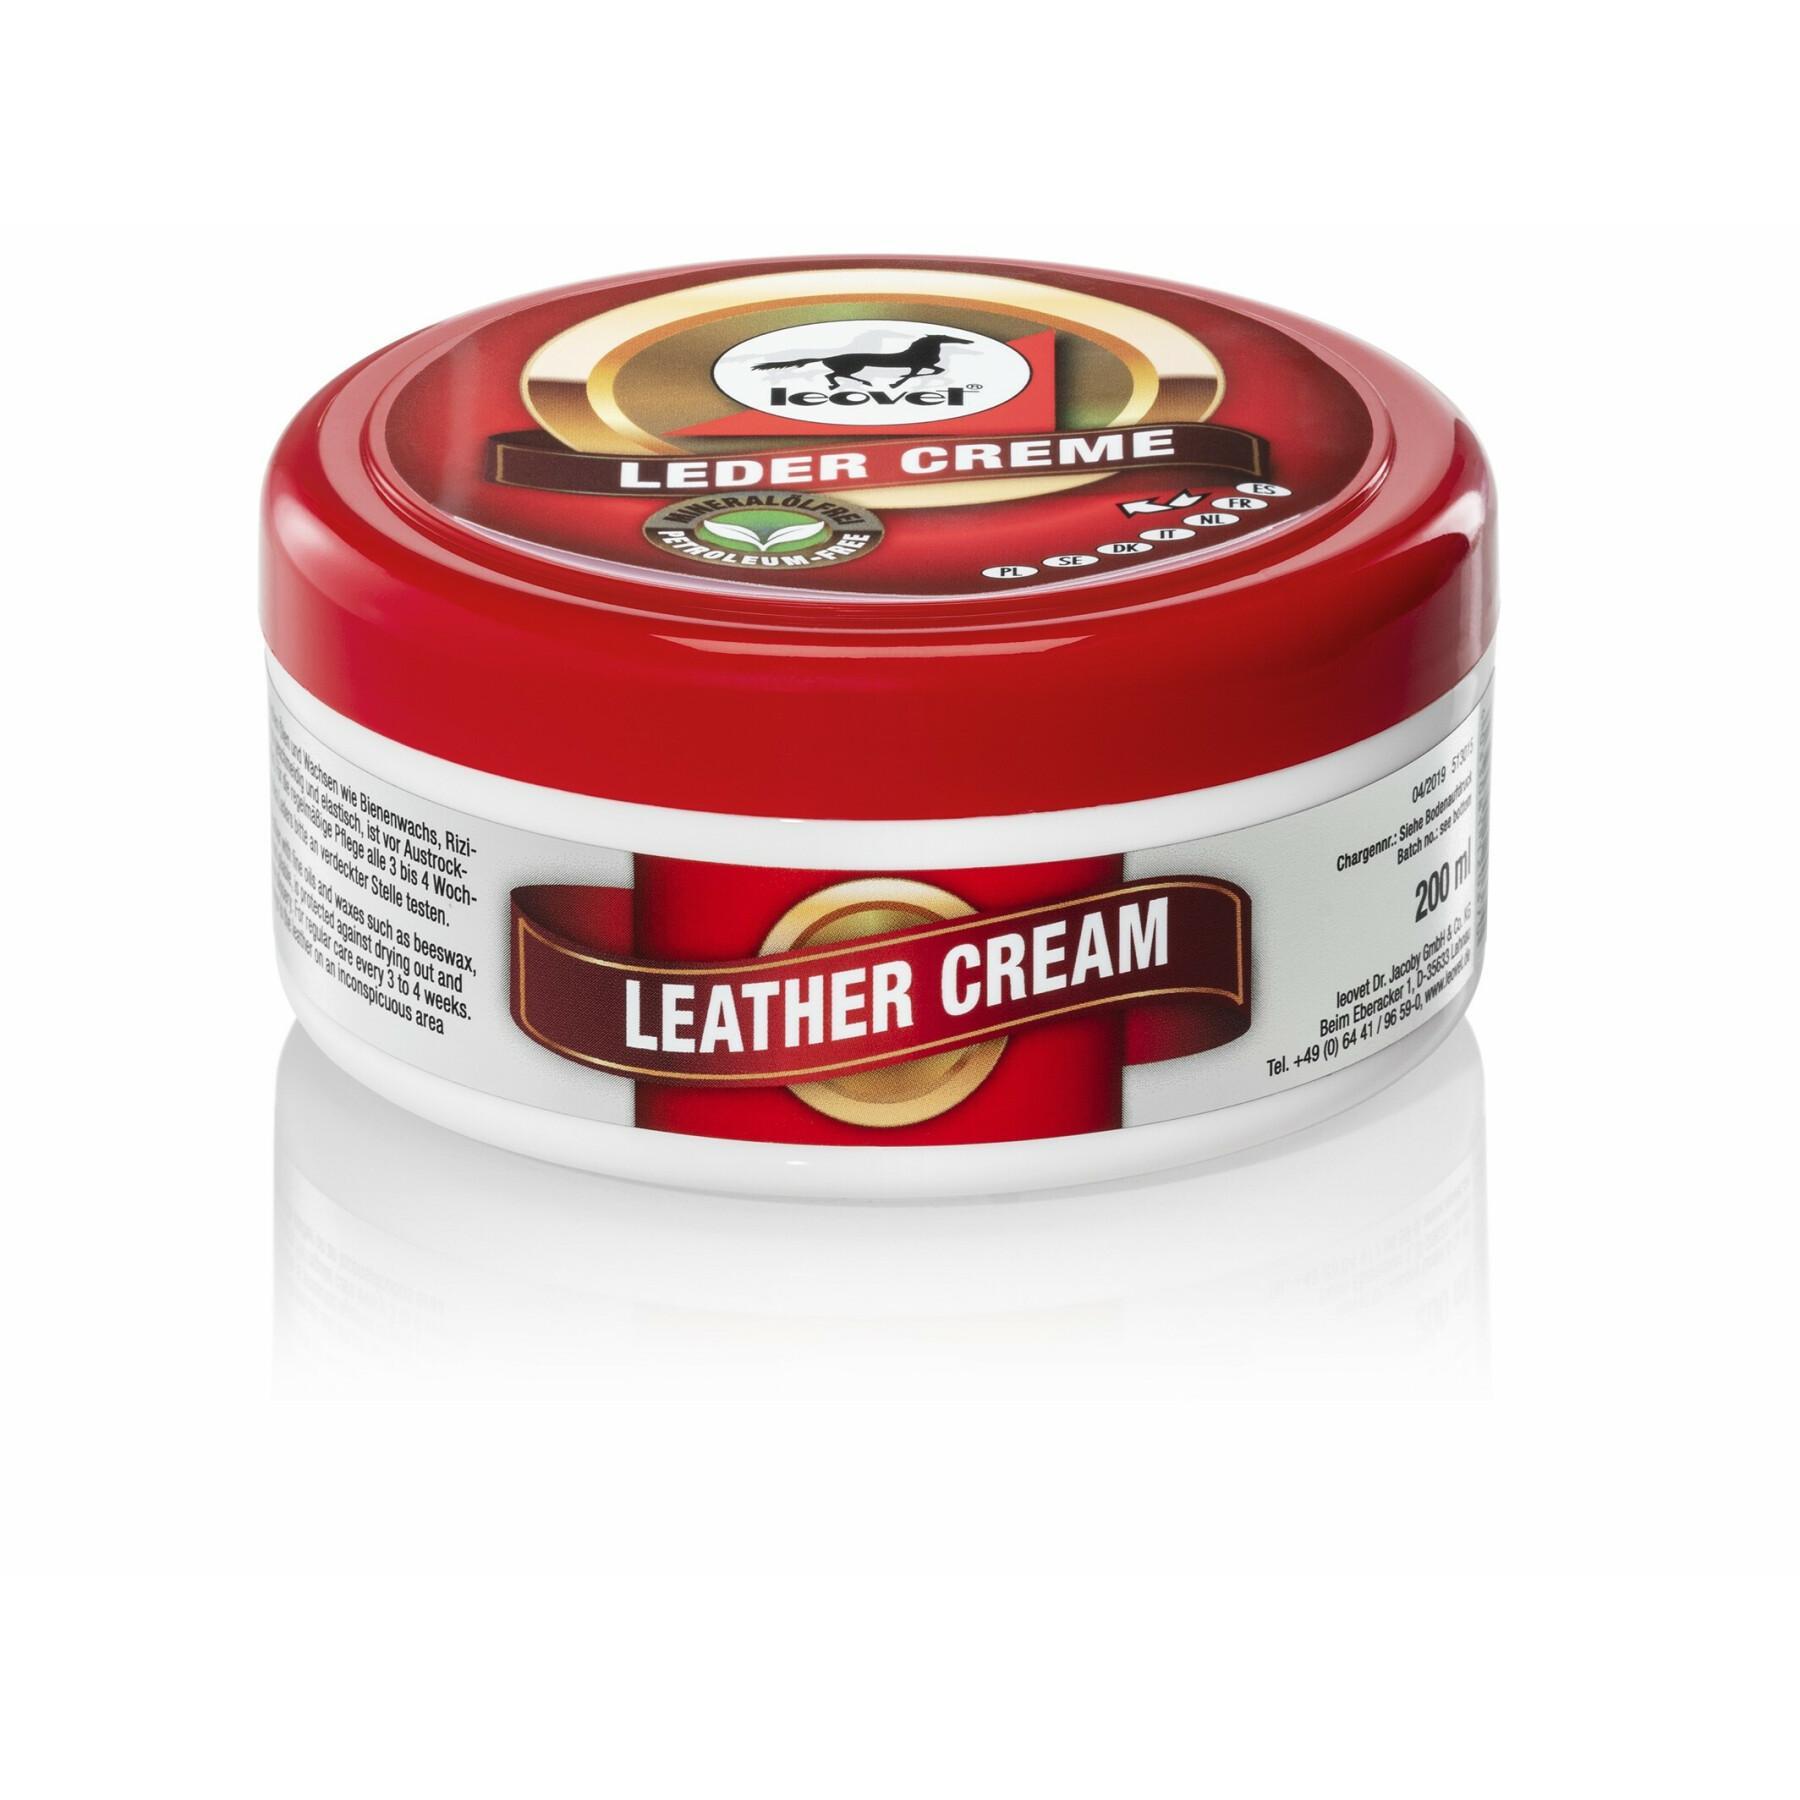 Leather cream Leovet 200 ml